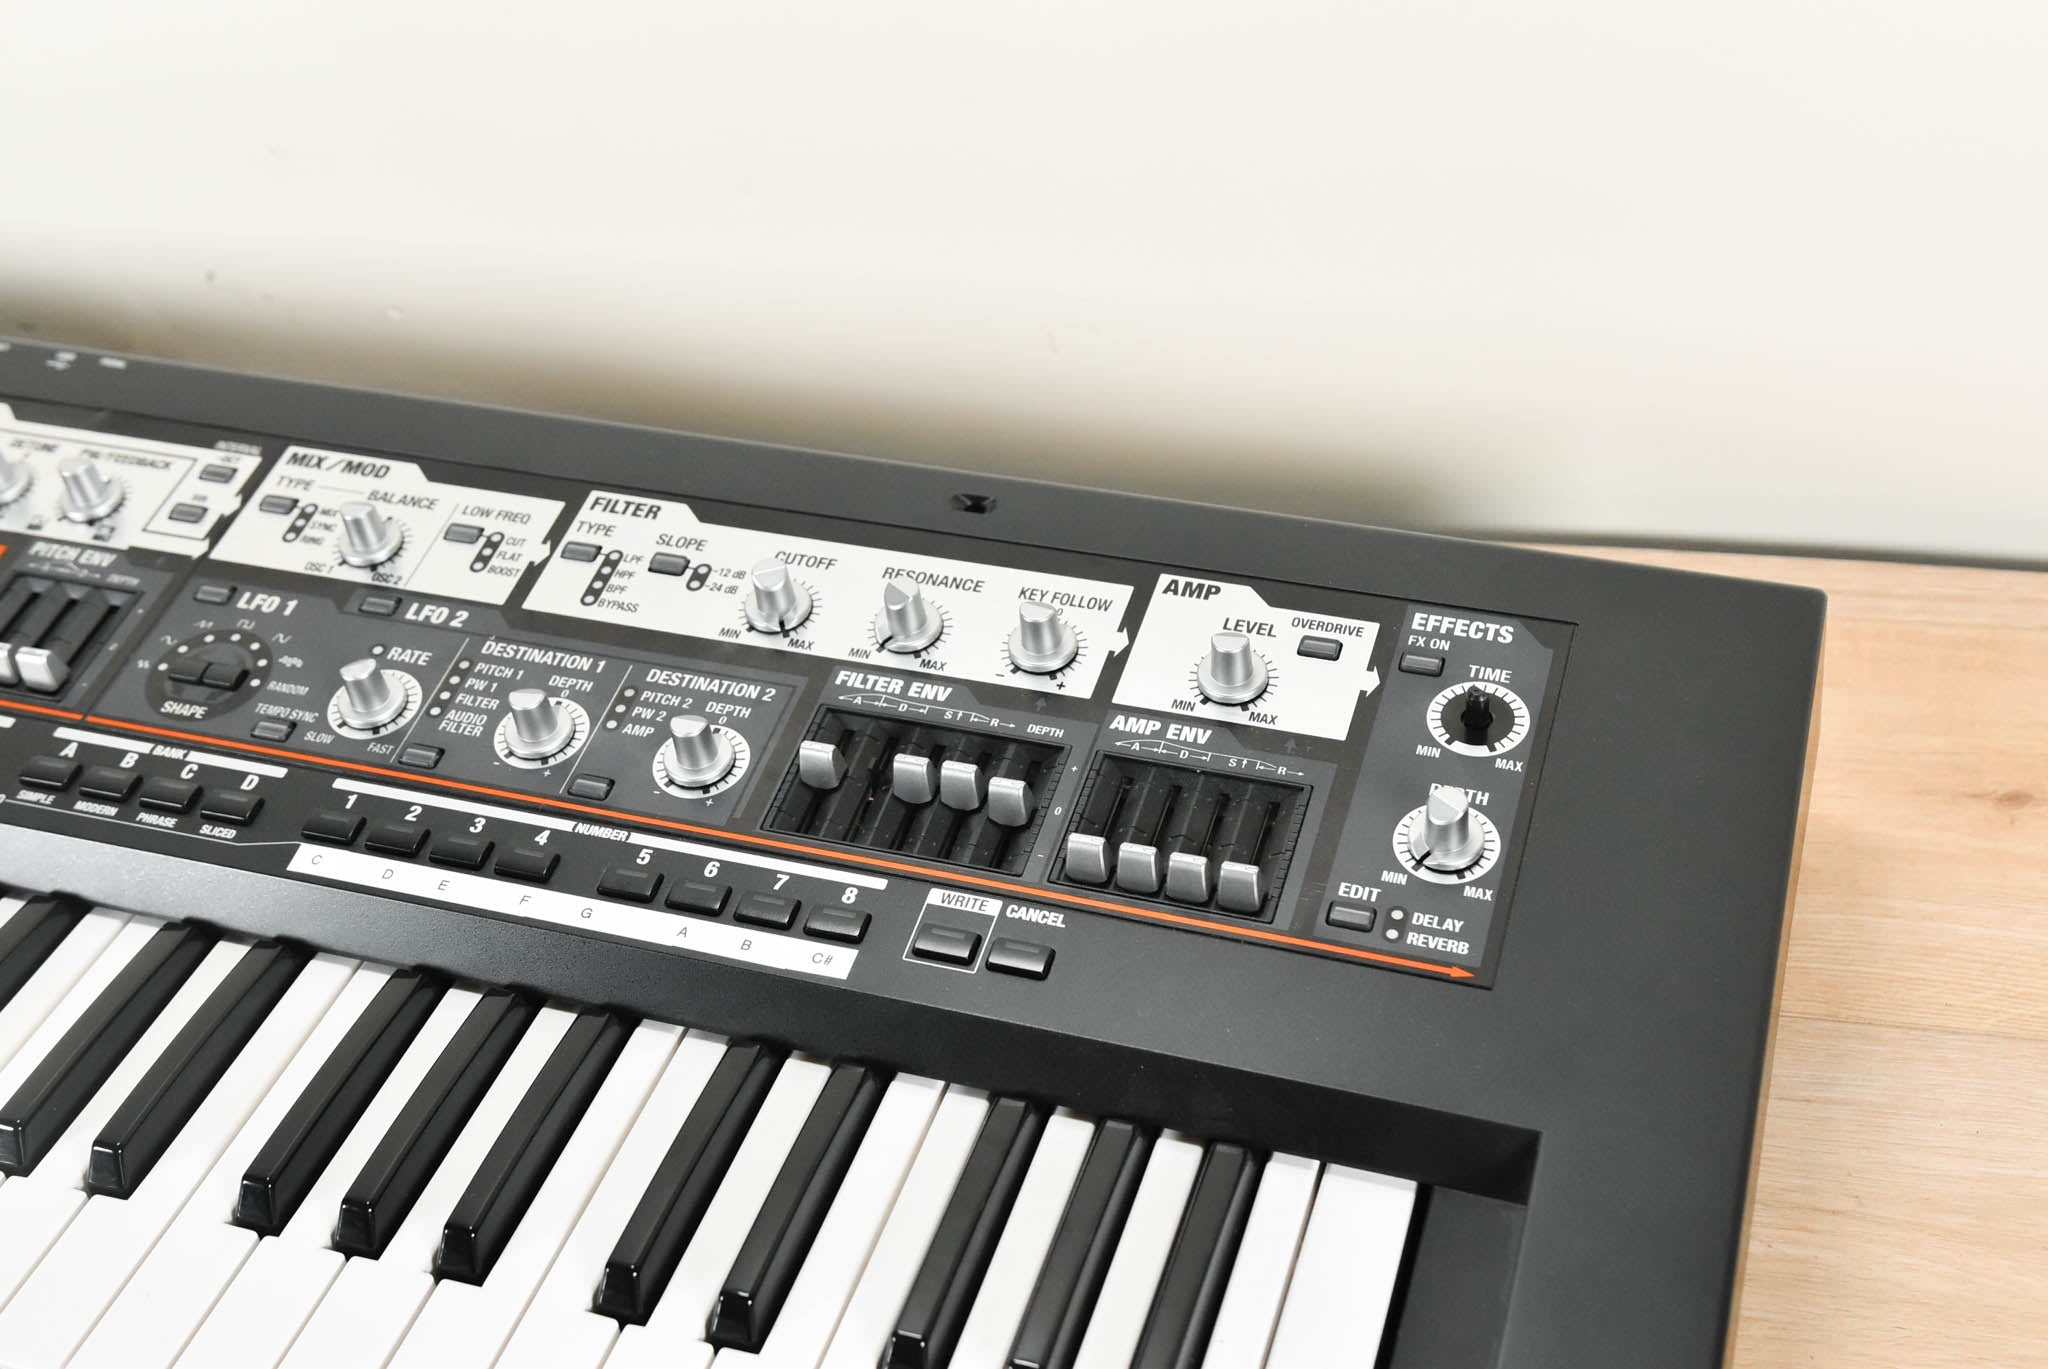 新品高評価Roland SH-201 シンセサイザー 鍵盤楽器